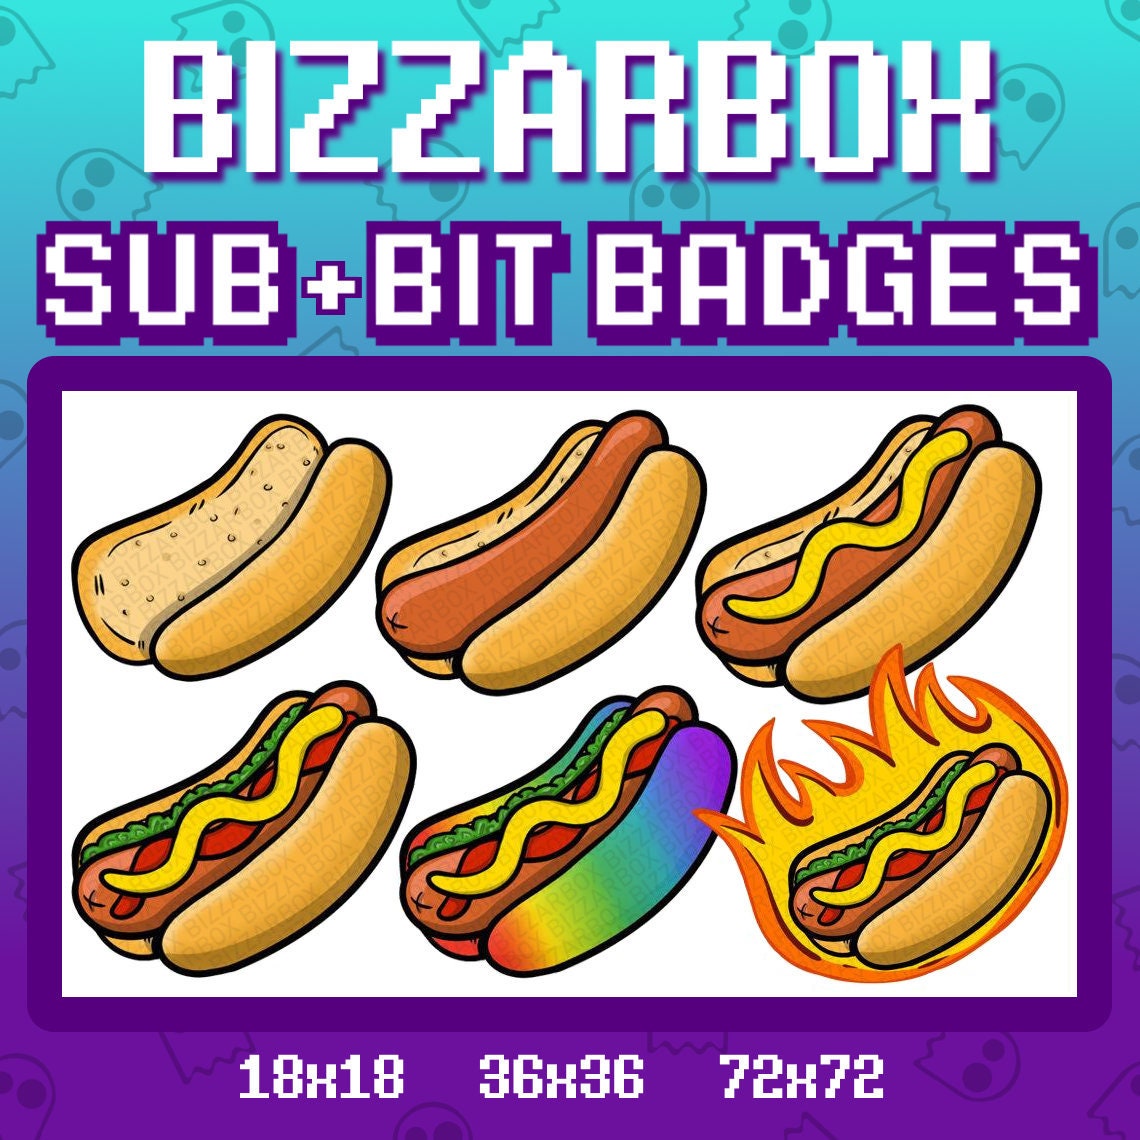 Hot Dog Twitch Sub Badges Cheer Bit Badges Emote Emotes Etsy